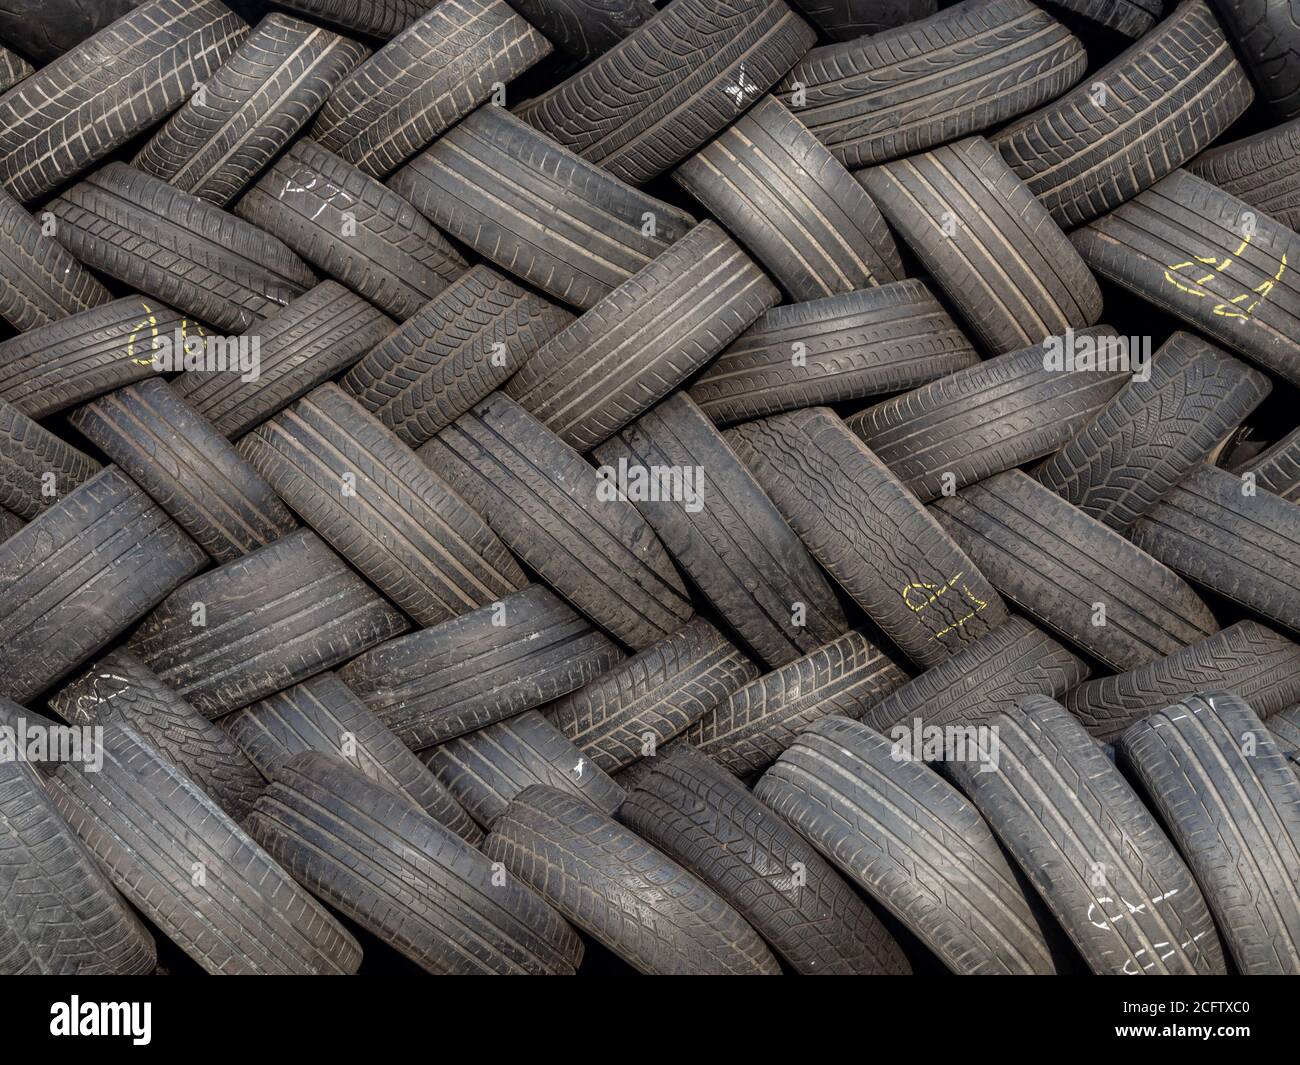 Photo conceptuelle montrant une pile de pneus de voiture d'occasion disposés selon un motif géométrique. Écologie, consumérisme, pollution, excès. Banque D'Images